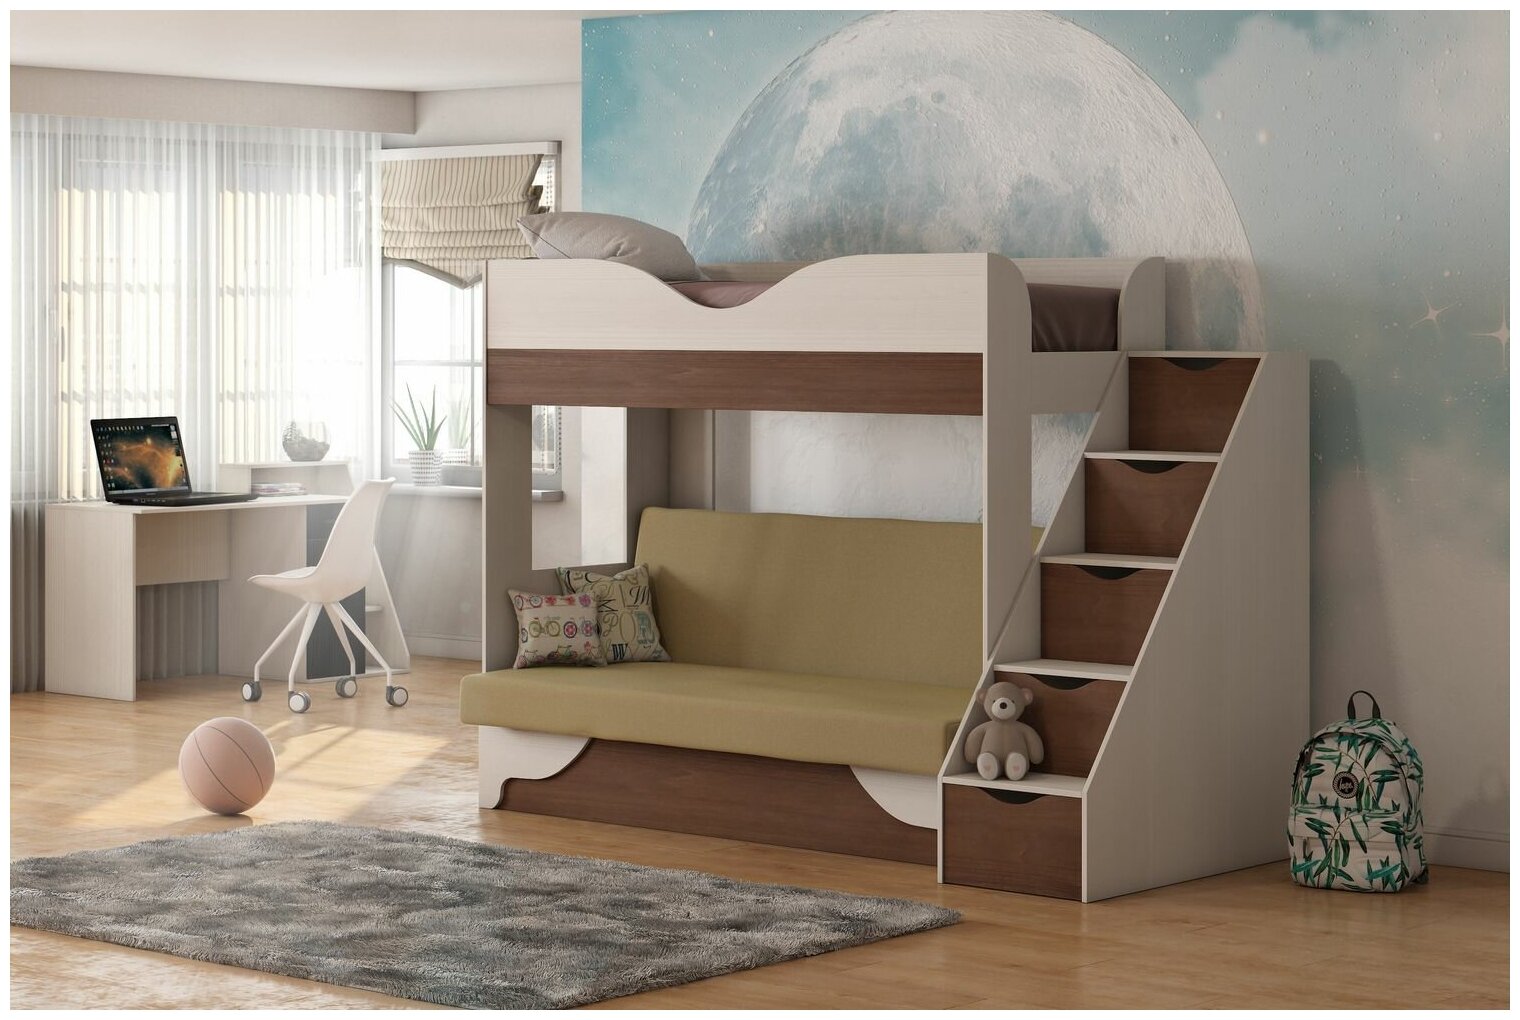 Двухъярусная кровать с диваном Шерри обивка бежевая